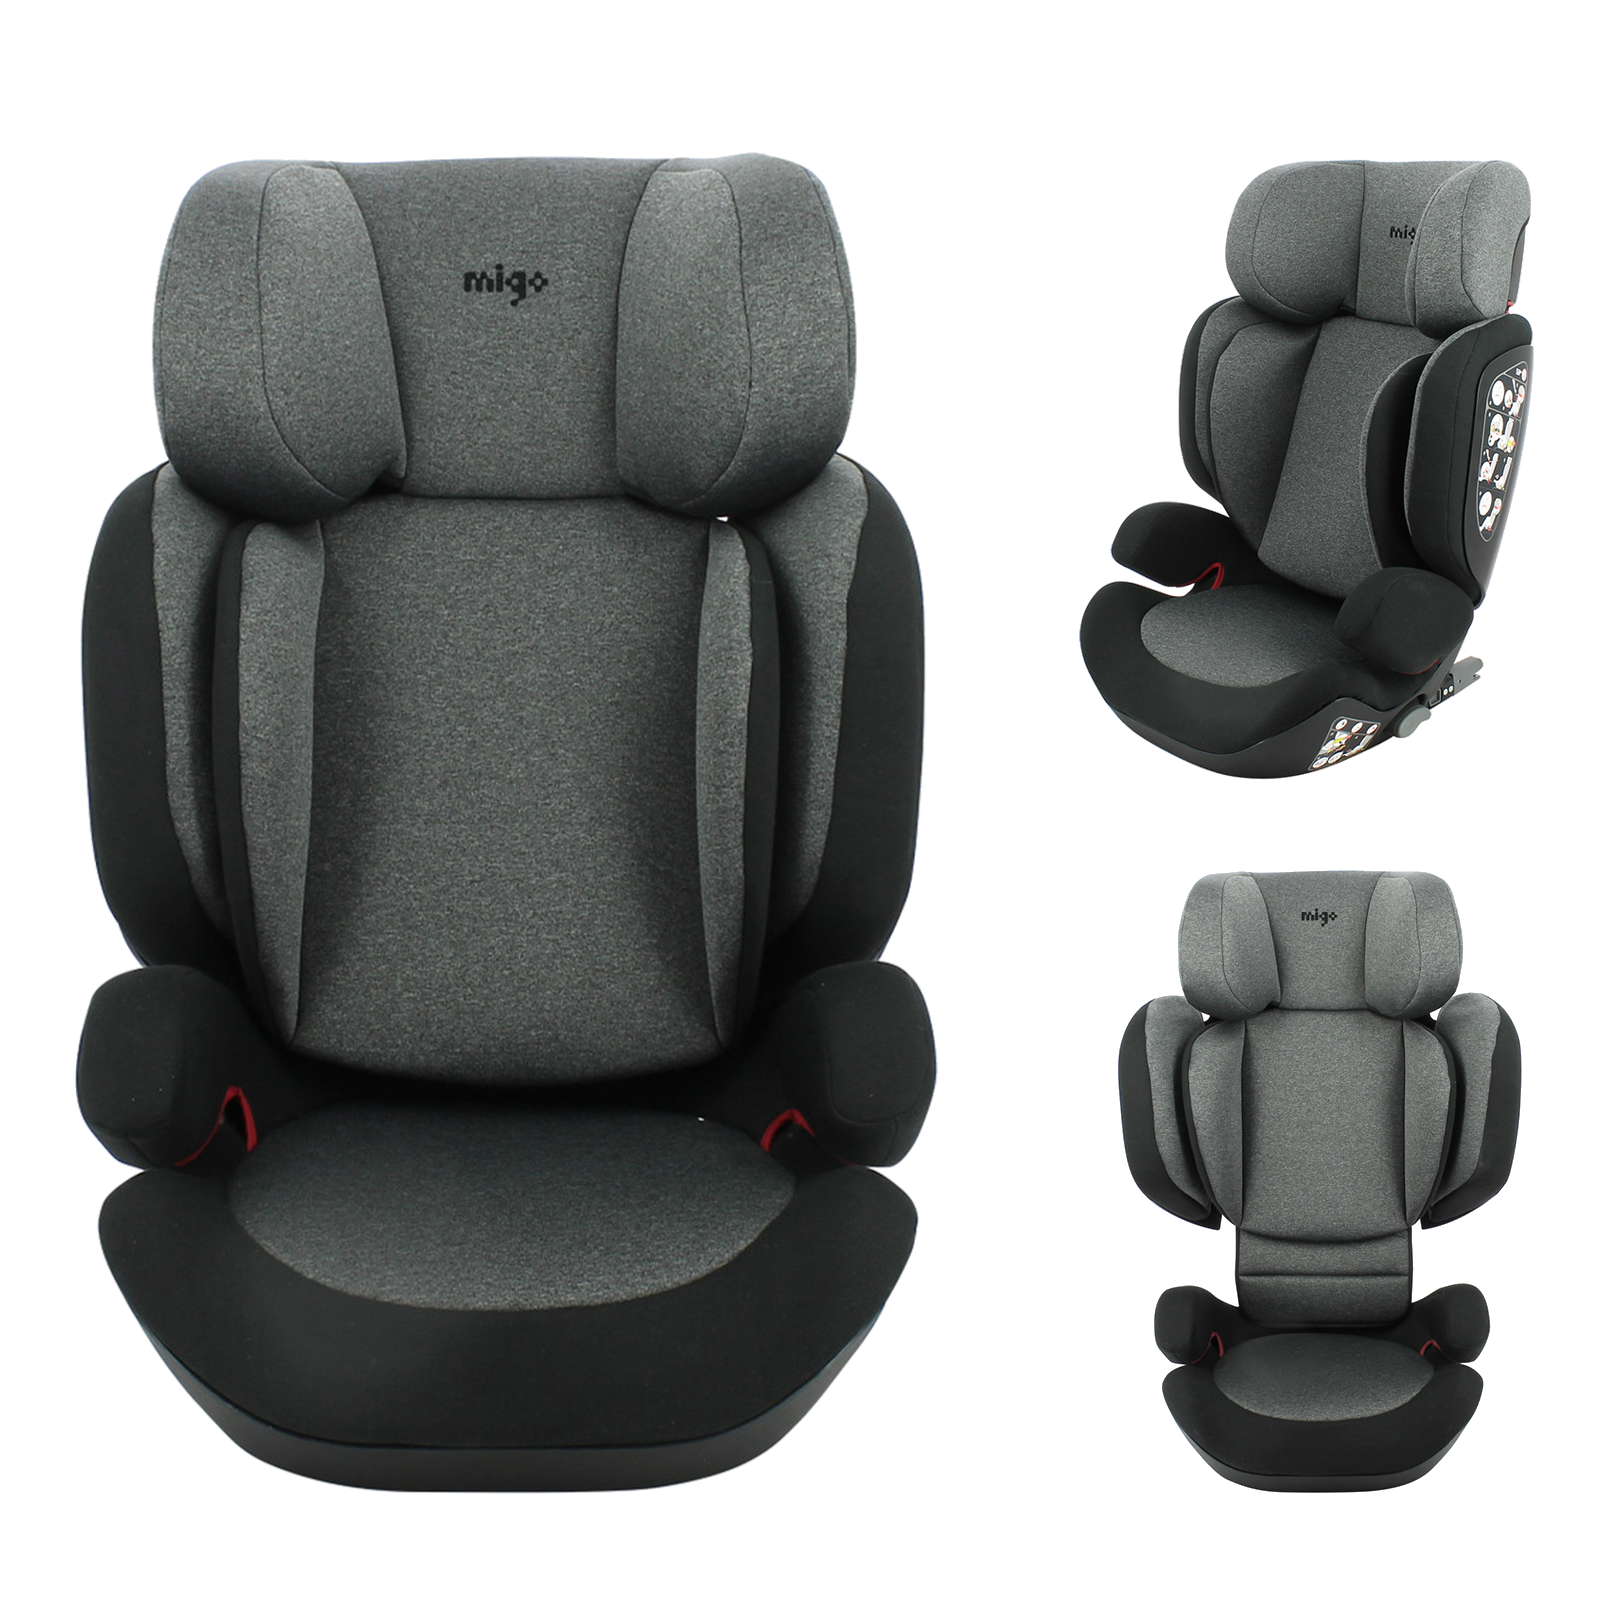 Siège-auto isofix Seat 4 Fix Groupe 0+/1/2/3 - Ombra